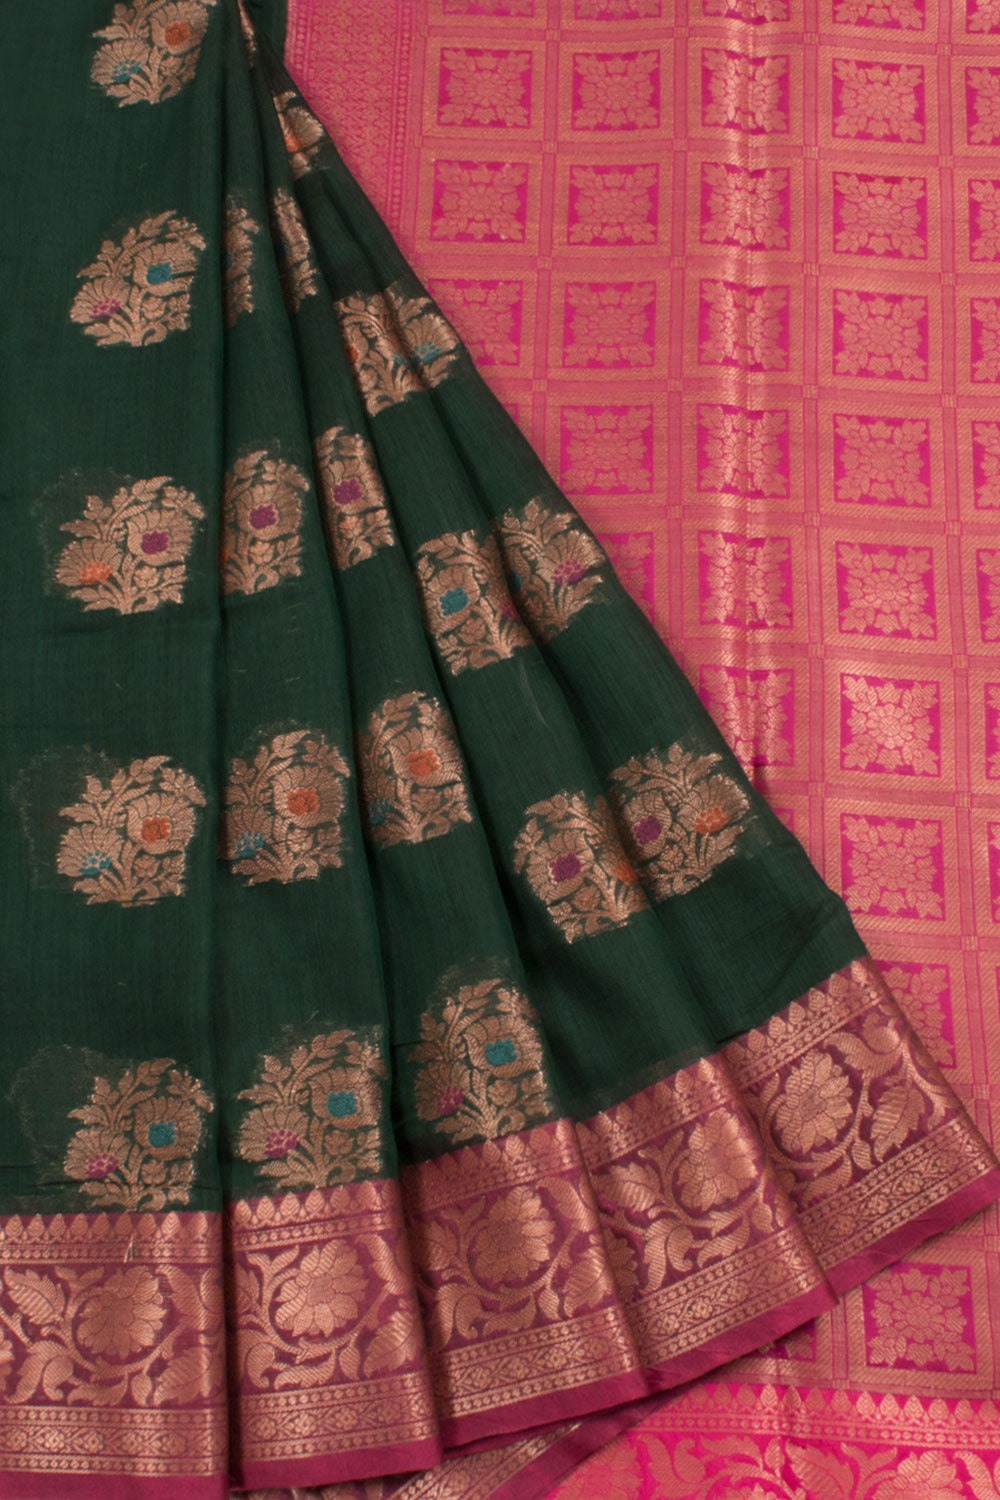 Banarasi Cotton Saree with Meenakari Floral Motifs, Jangla Border and Brocade Blouse